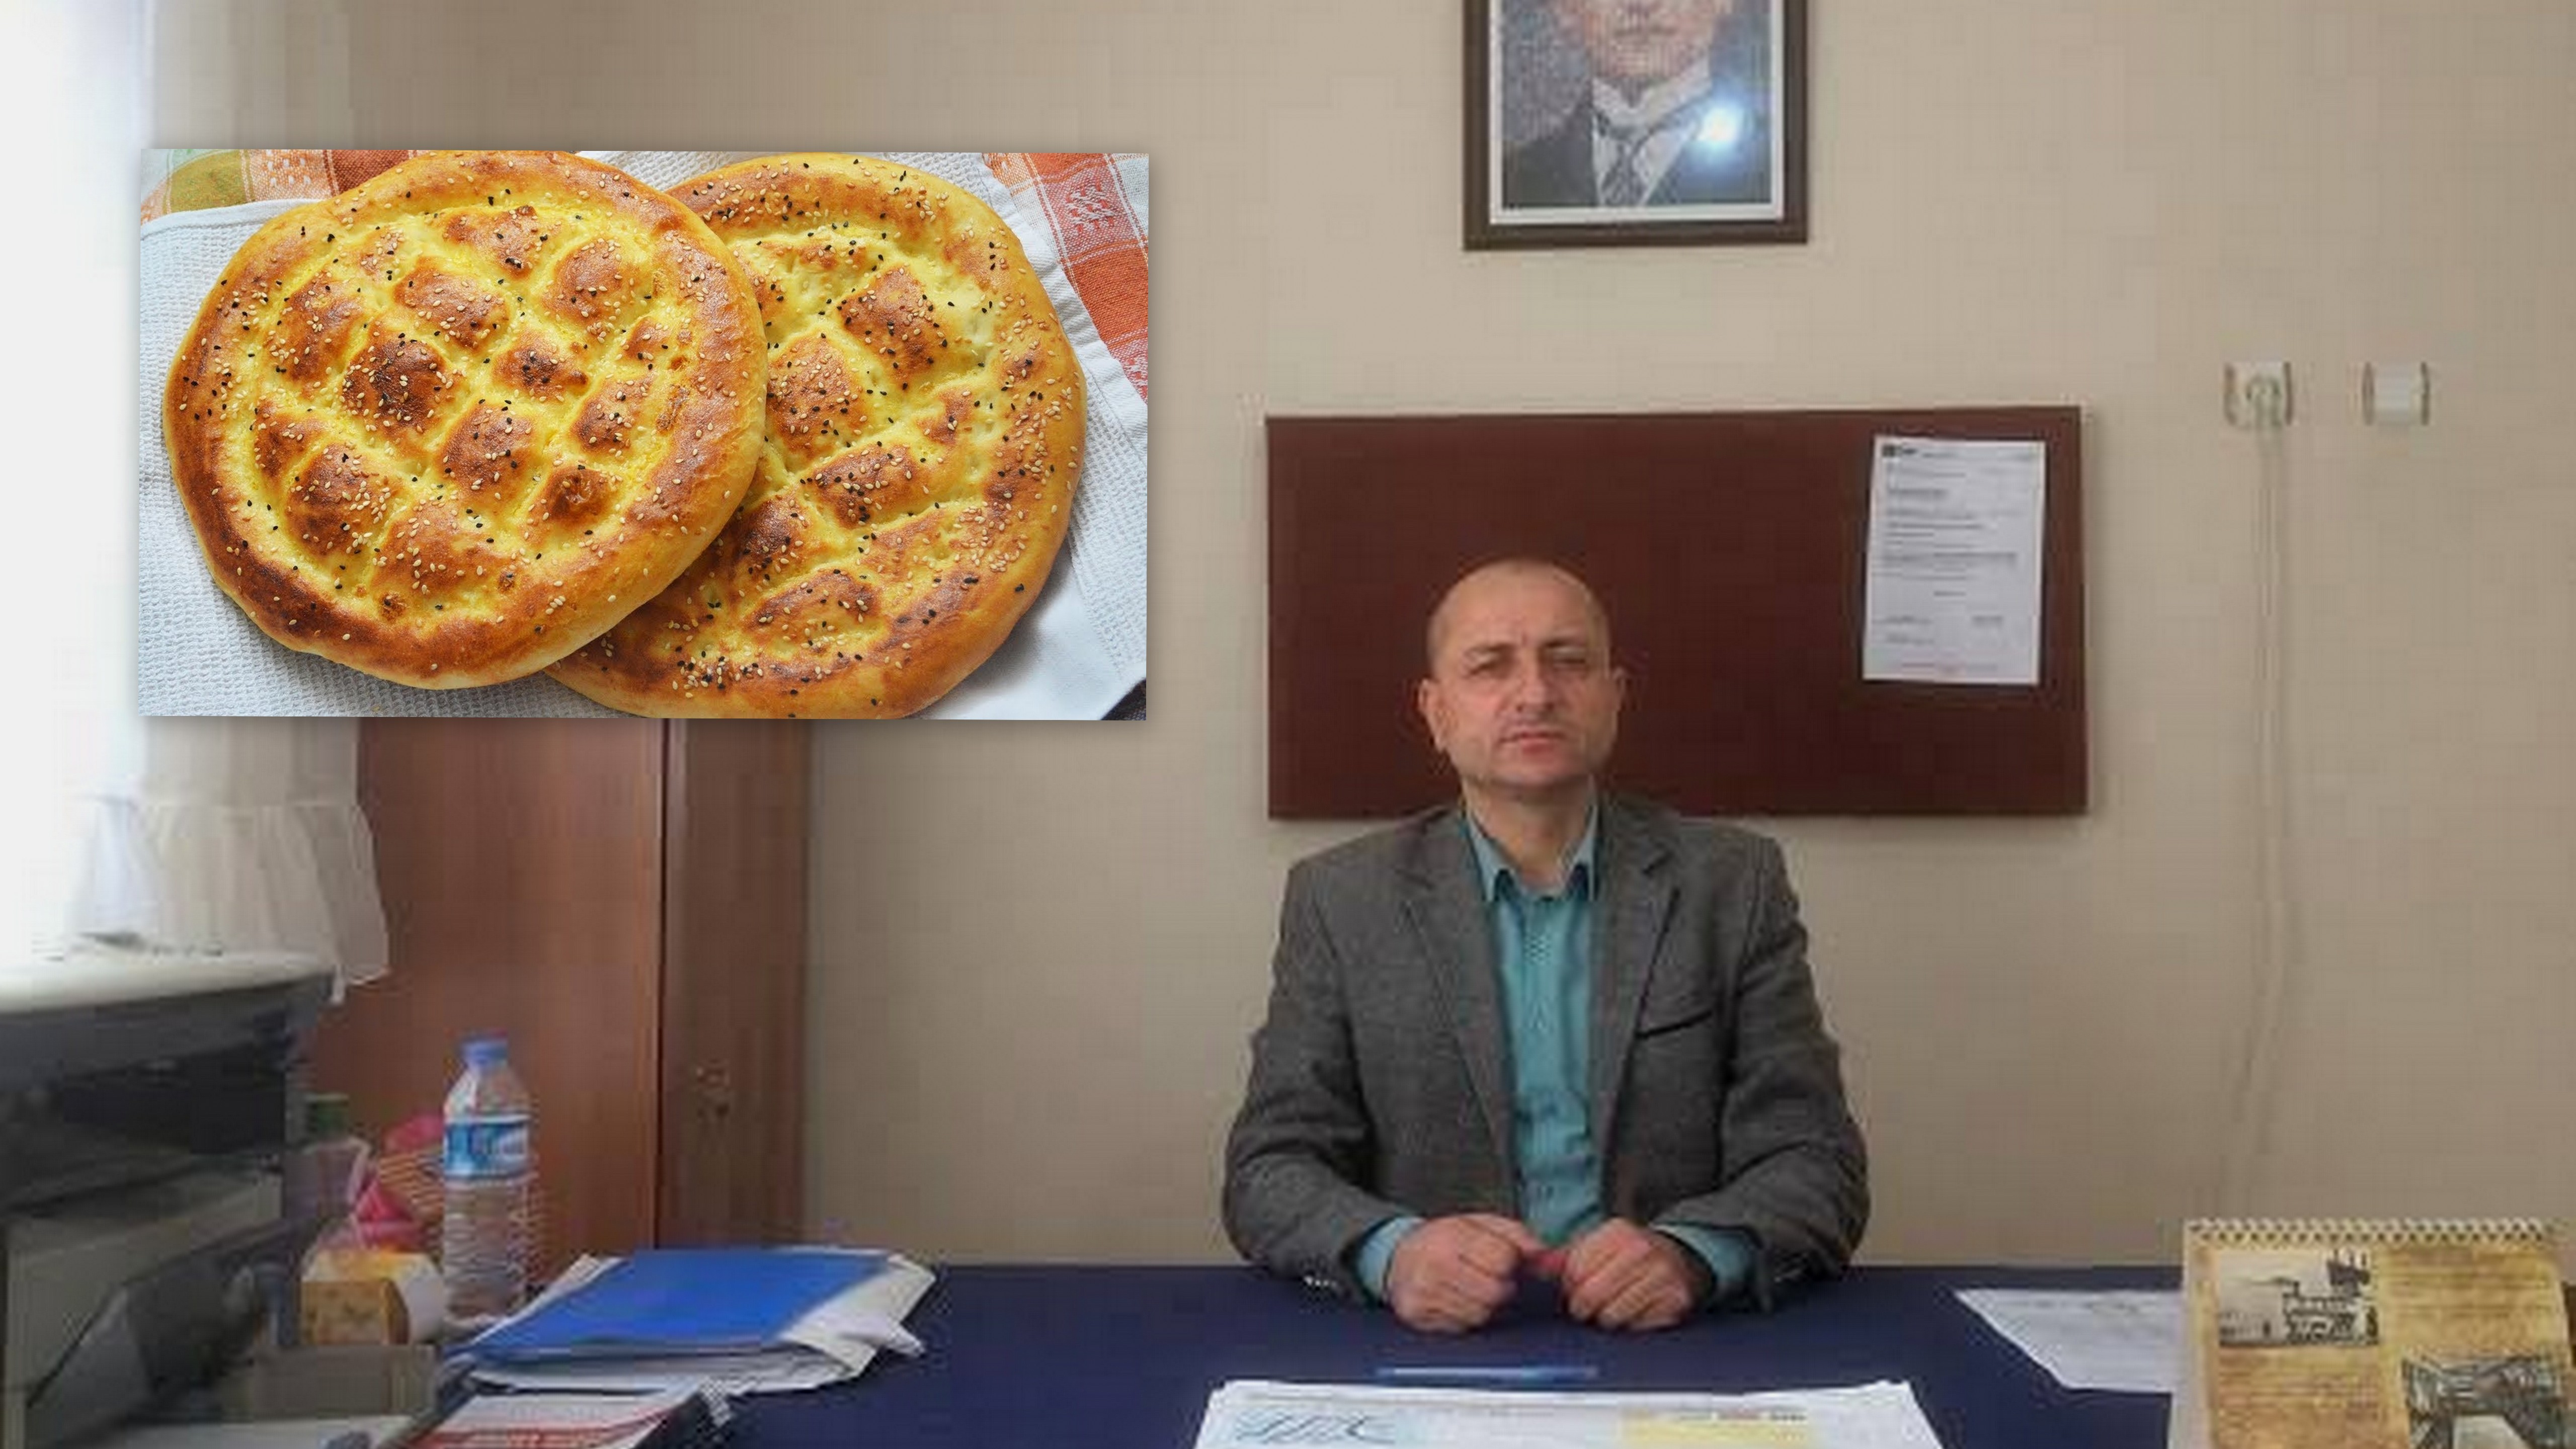 CHP Arifiye İlçe Başkanı Gökpınar,Ramazan Pidesi Fiyatlarını beğenmedi